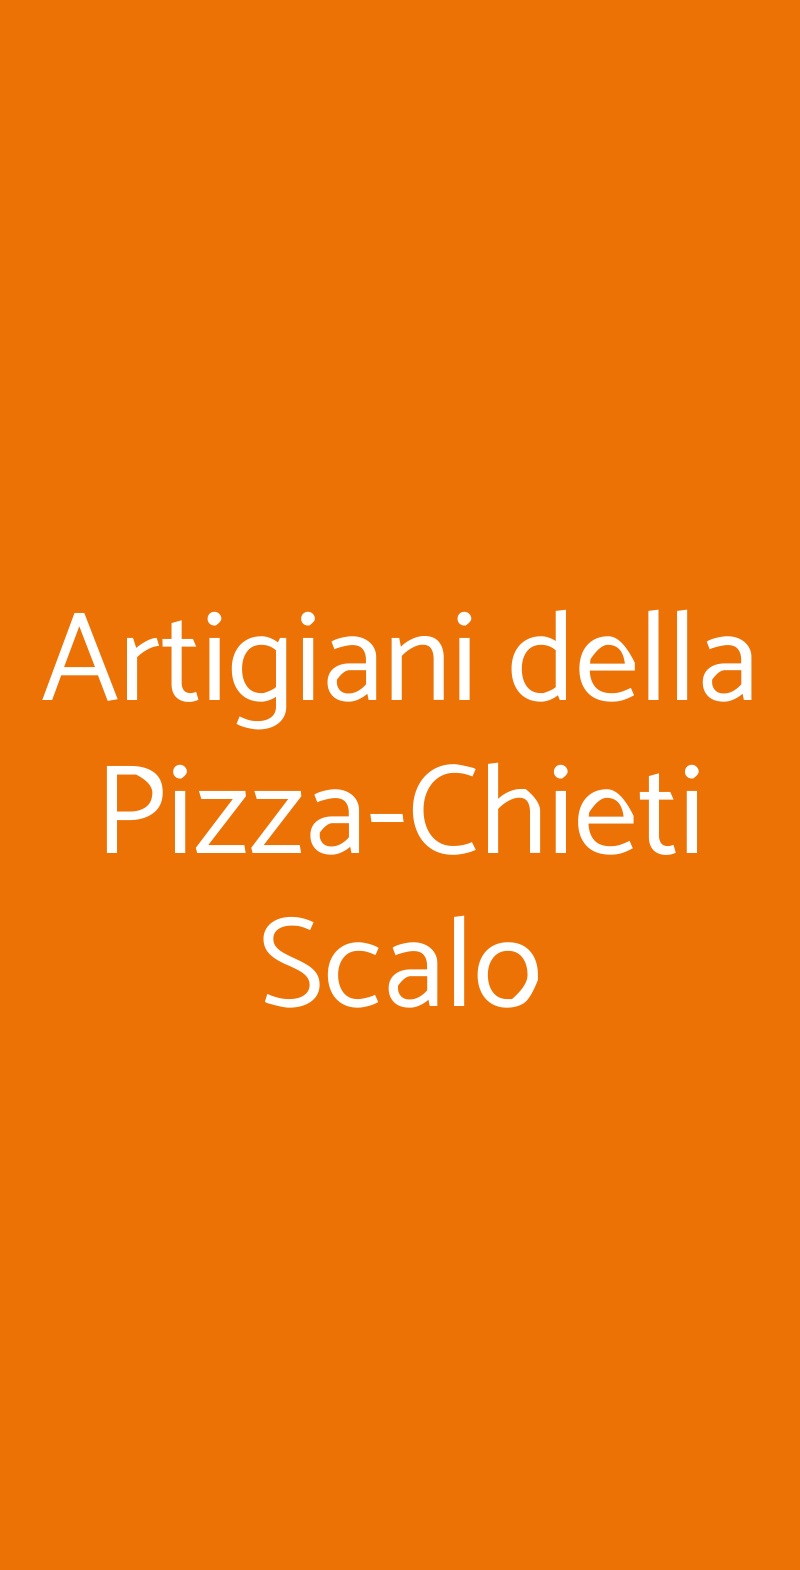 Artigiani della Pizza-Chieti Scalo Chieti menù 1 pagina